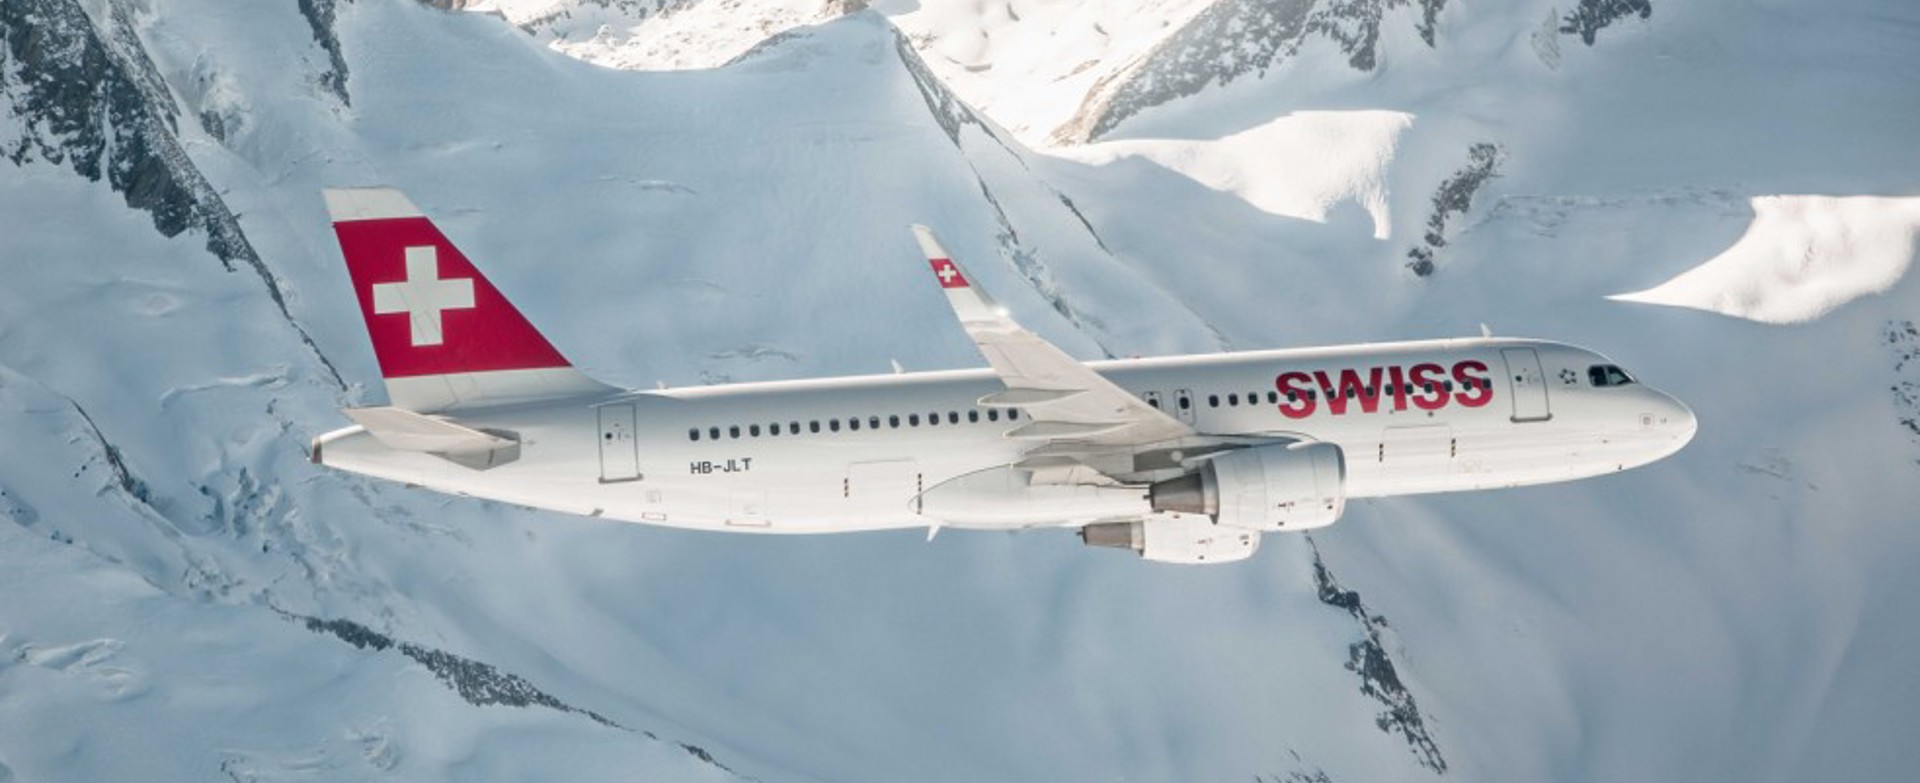 Swiss A320 1 984X554